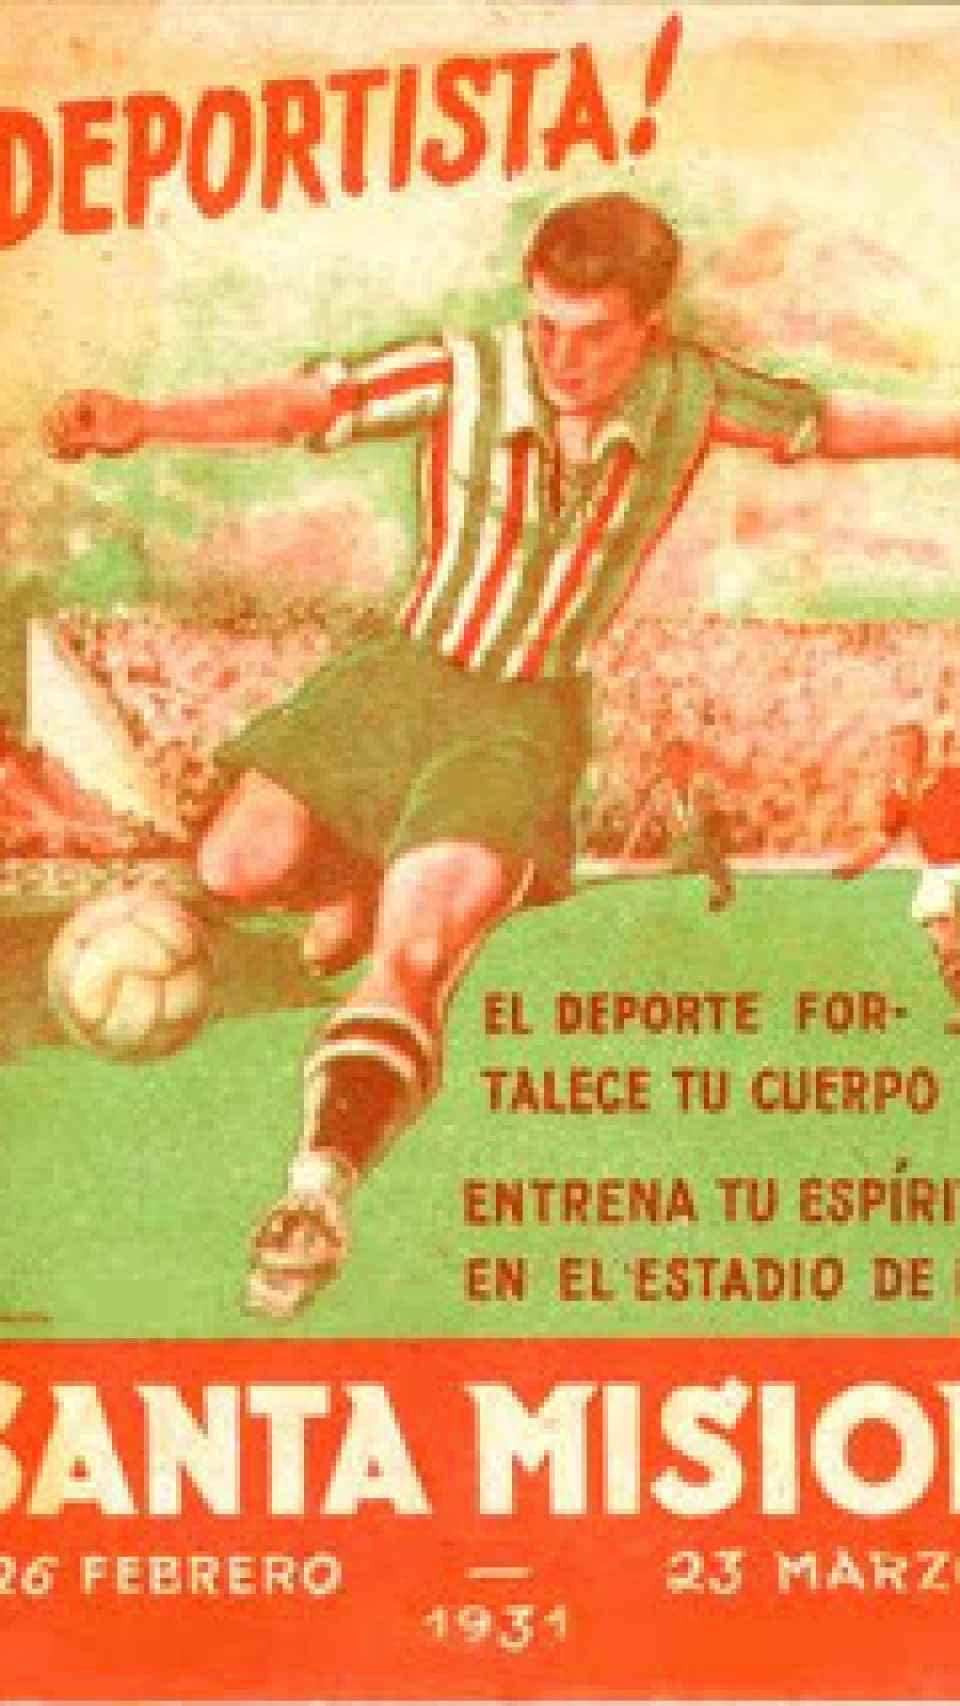 Cartel del estadio creado por el párroco Francisco Míguez Fernández.